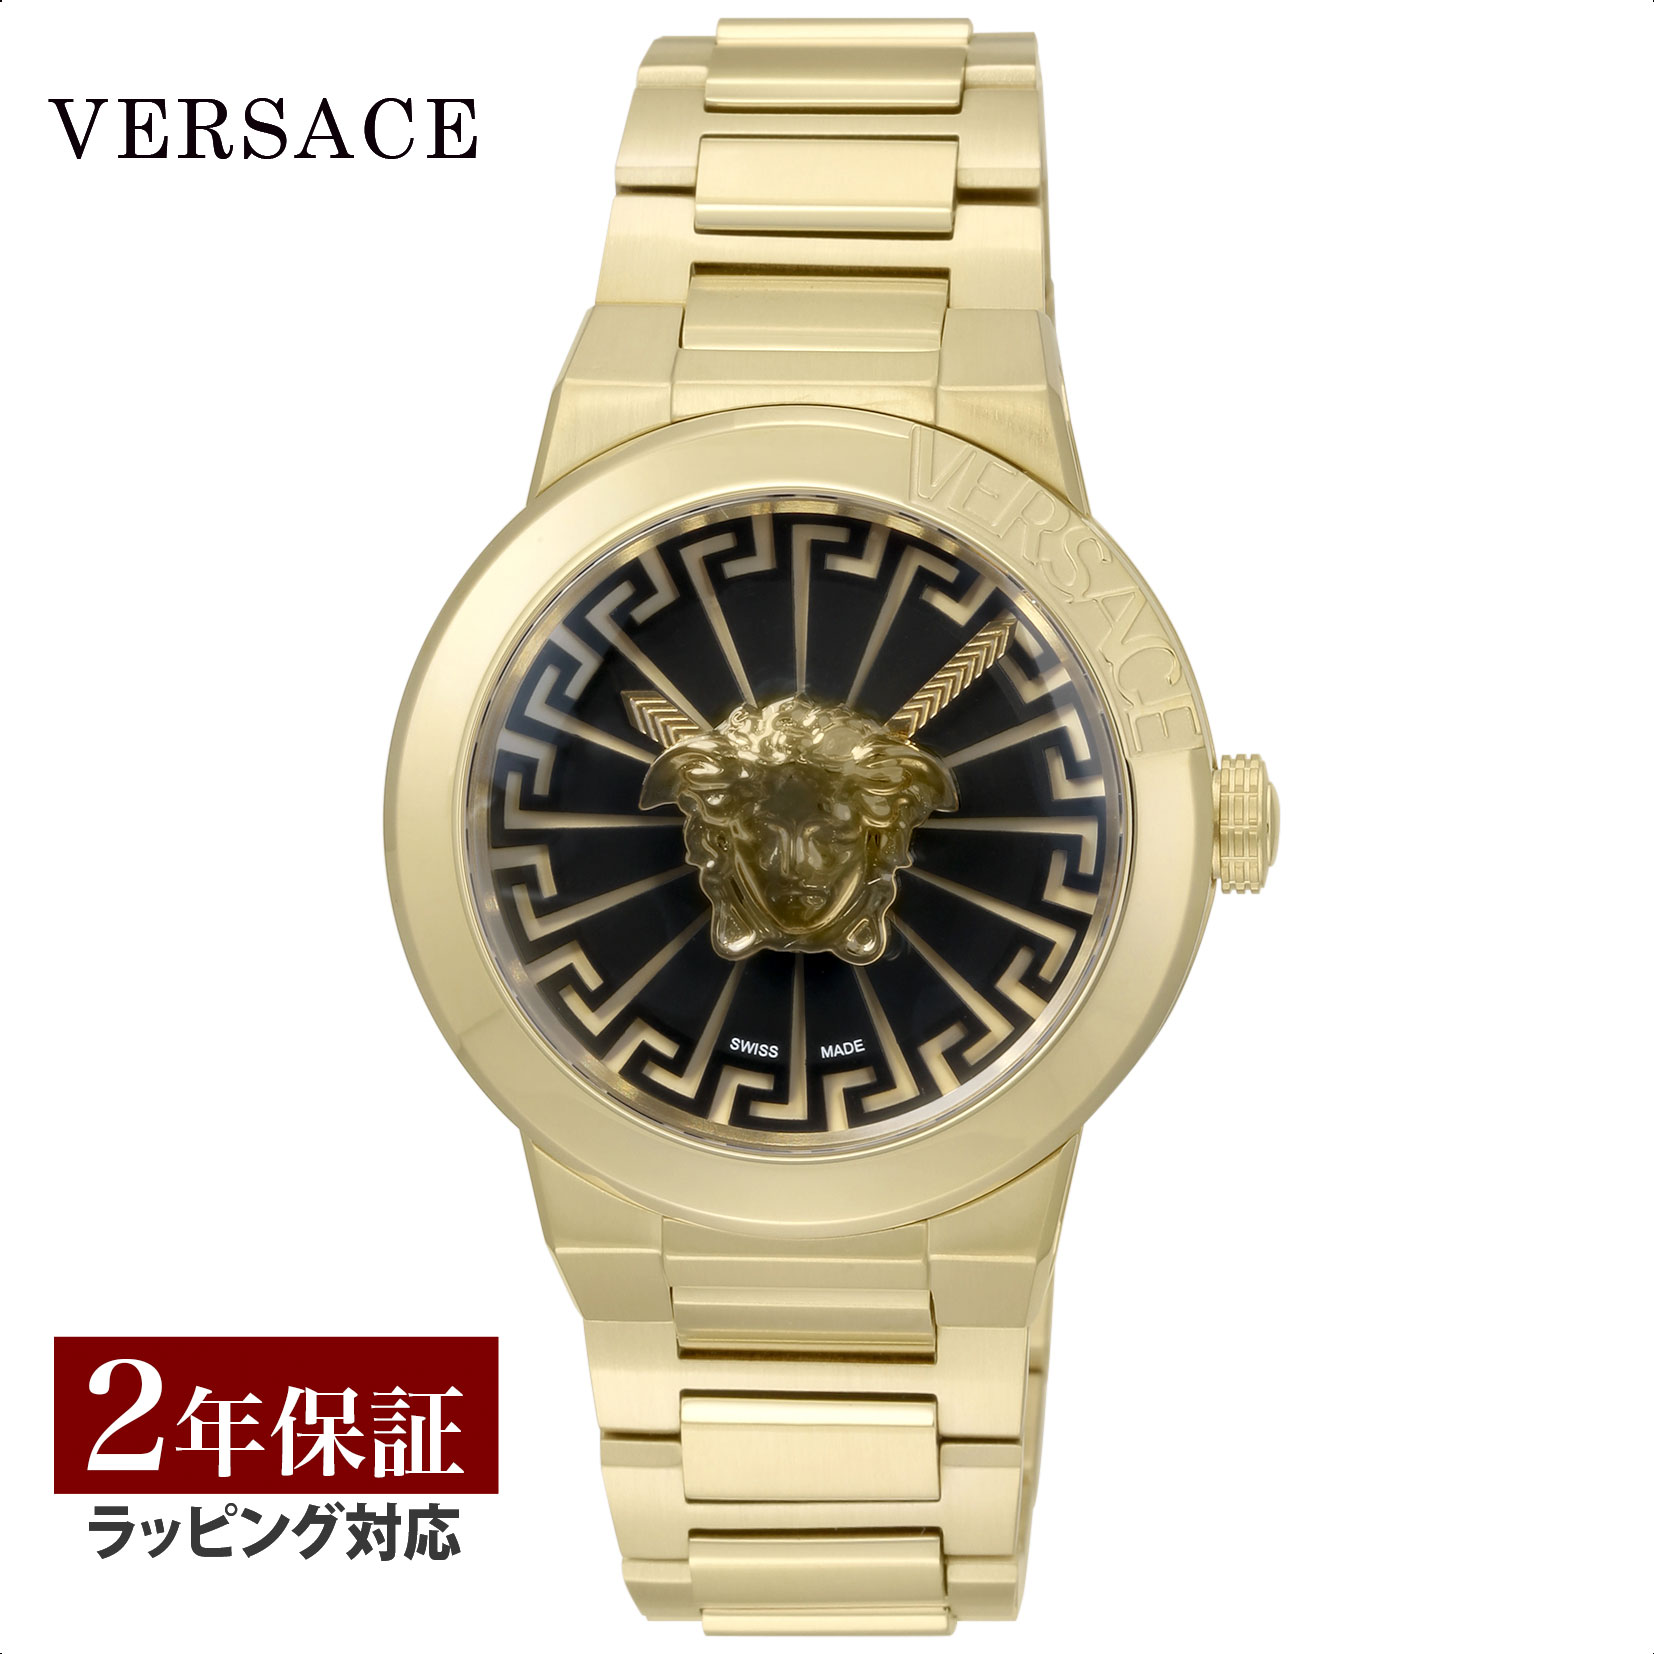 ヴェルサーチ 腕時計（メンズ） ヴェルサーチェ VERSACE メンズ 時計 メドゥーサ インフィニット Medusa Infinite クォーツ ブラック VE3F00522 腕時計 高級腕時計 ブランド